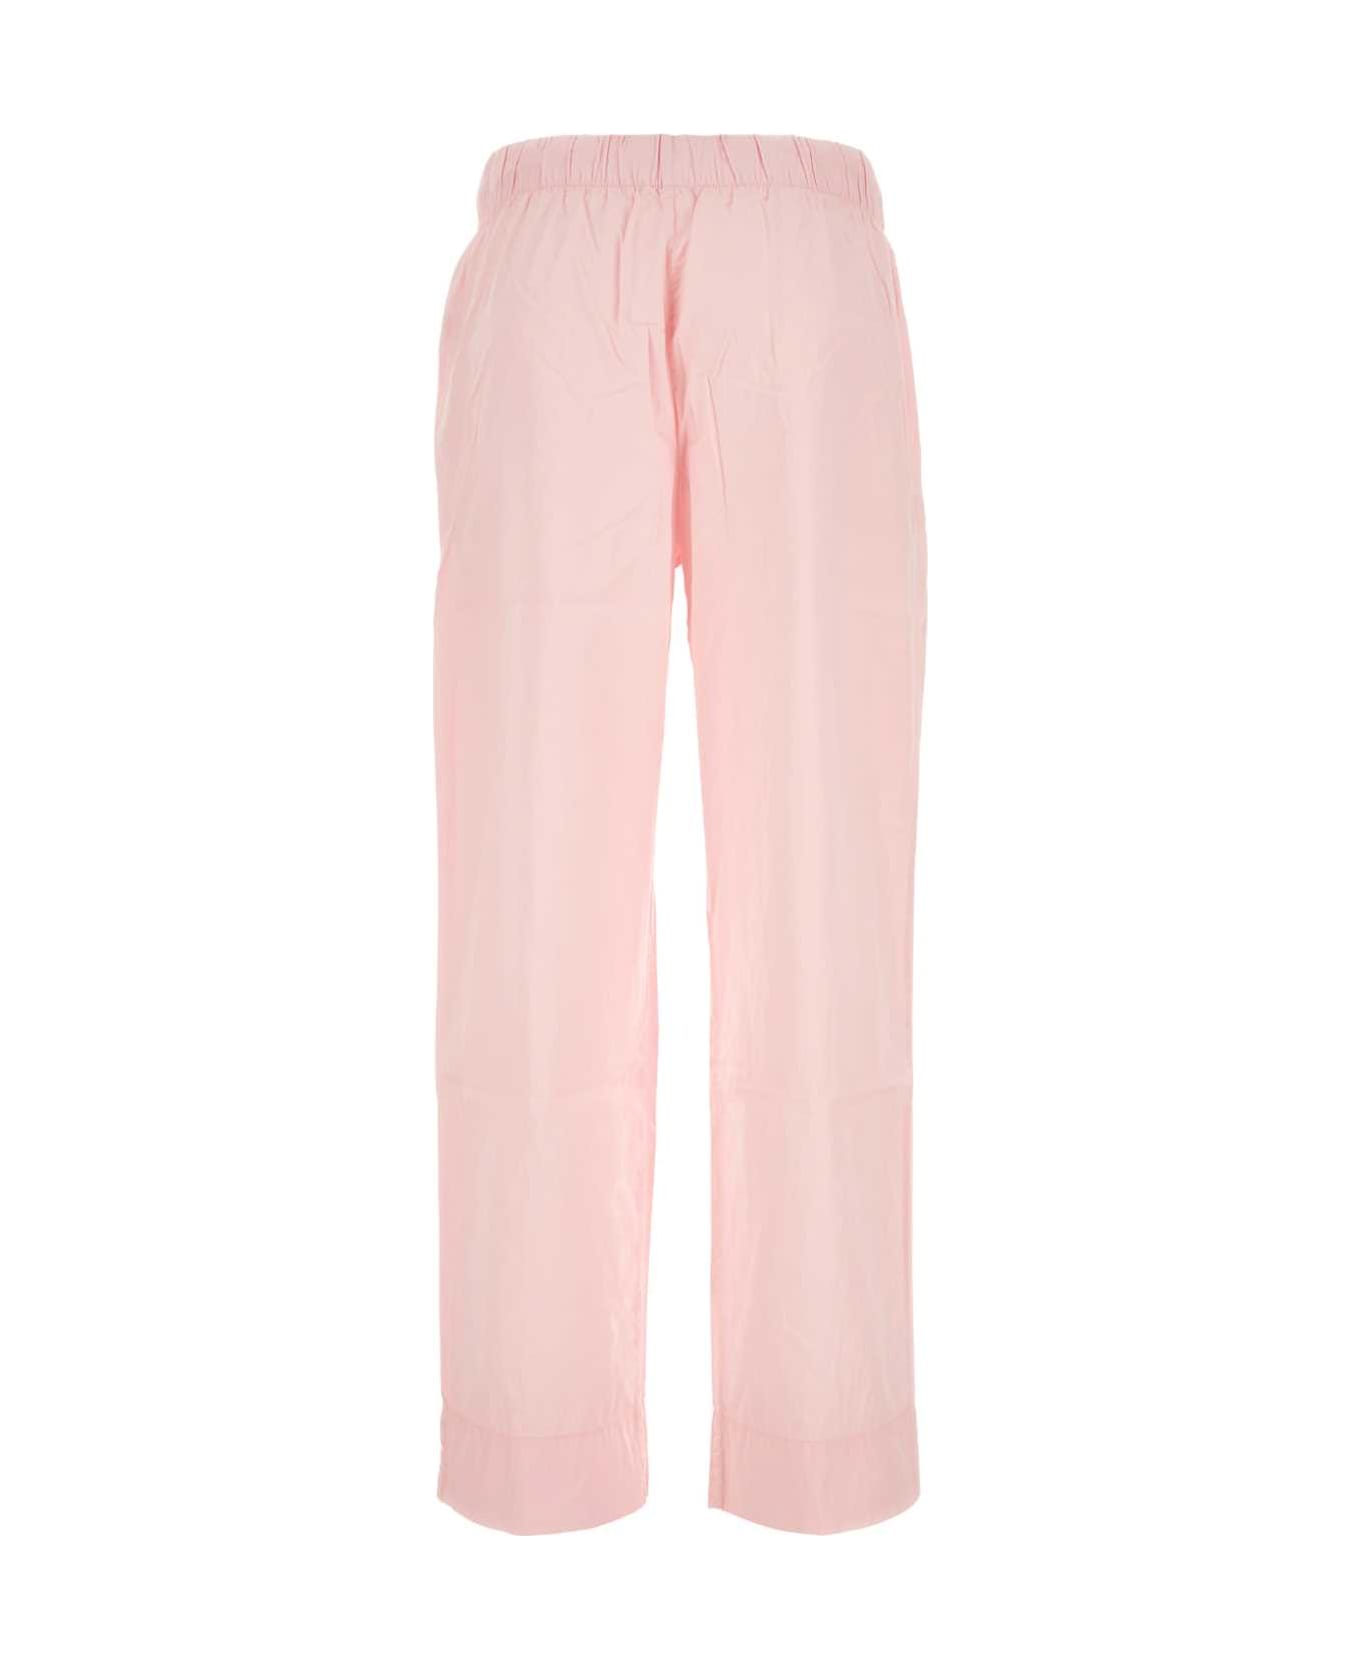 Tekla Pink Cotton Pyjama Pant - SOFTPINK ボトムス